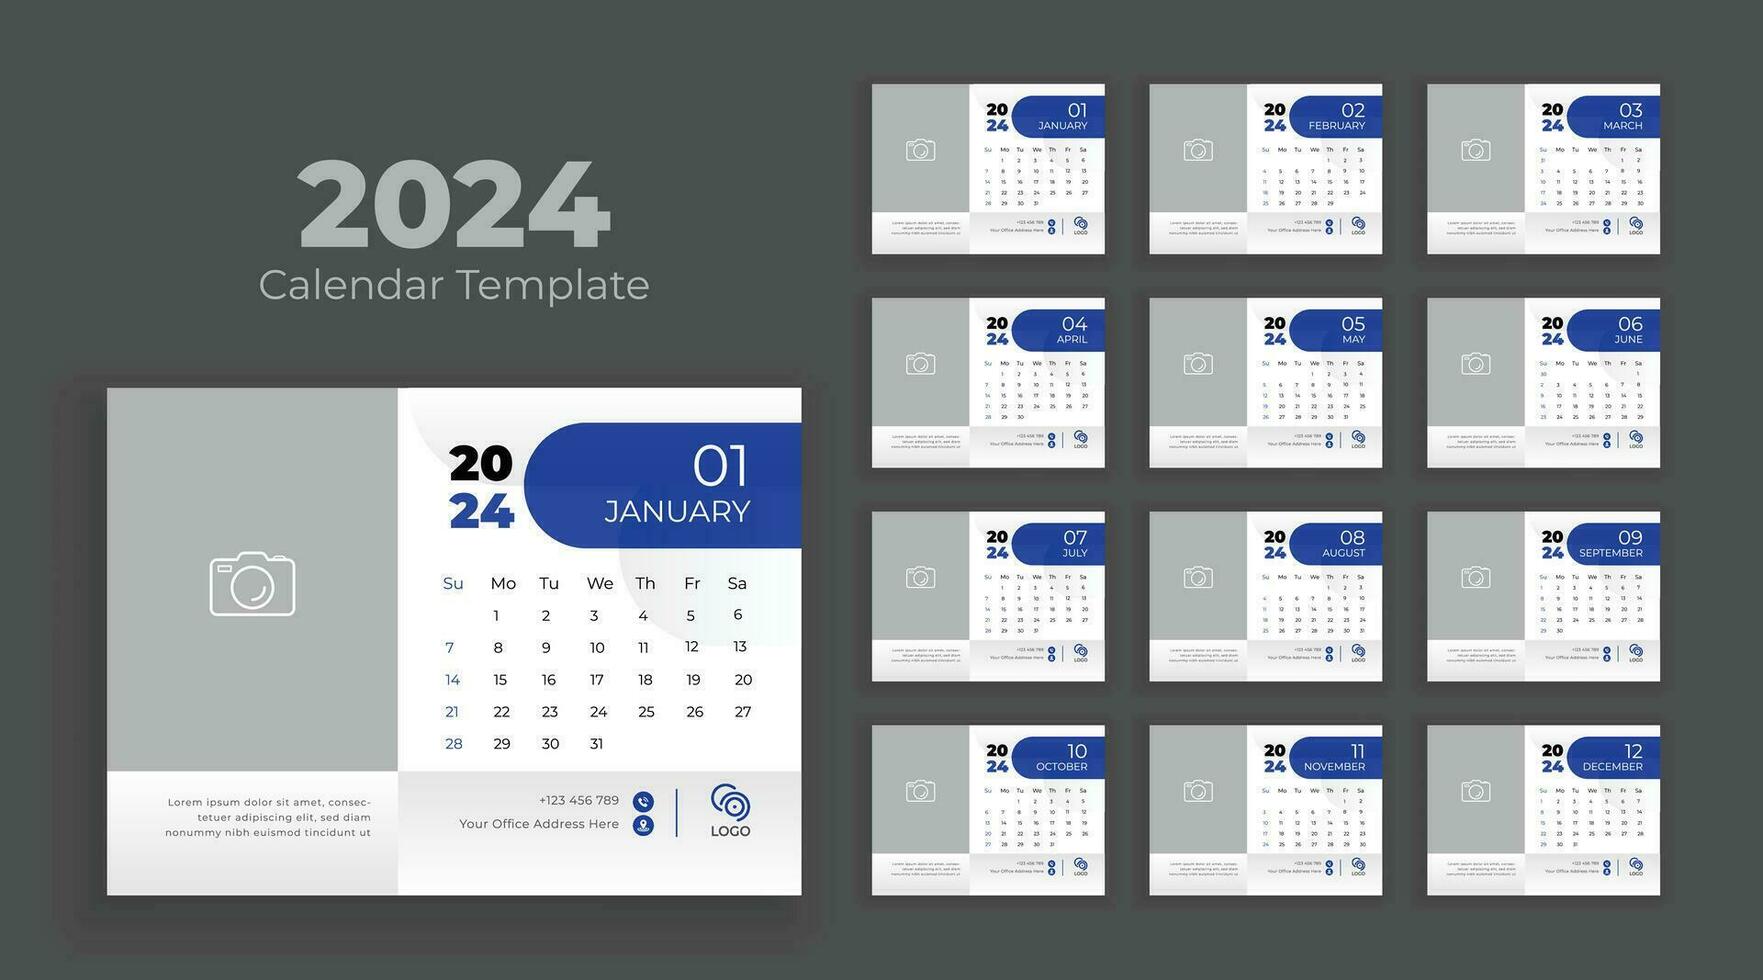 kalender mall för 2024 år. kalender 2024 planerare företags- mall design uppsättning. vecka börjar på söndag vektor